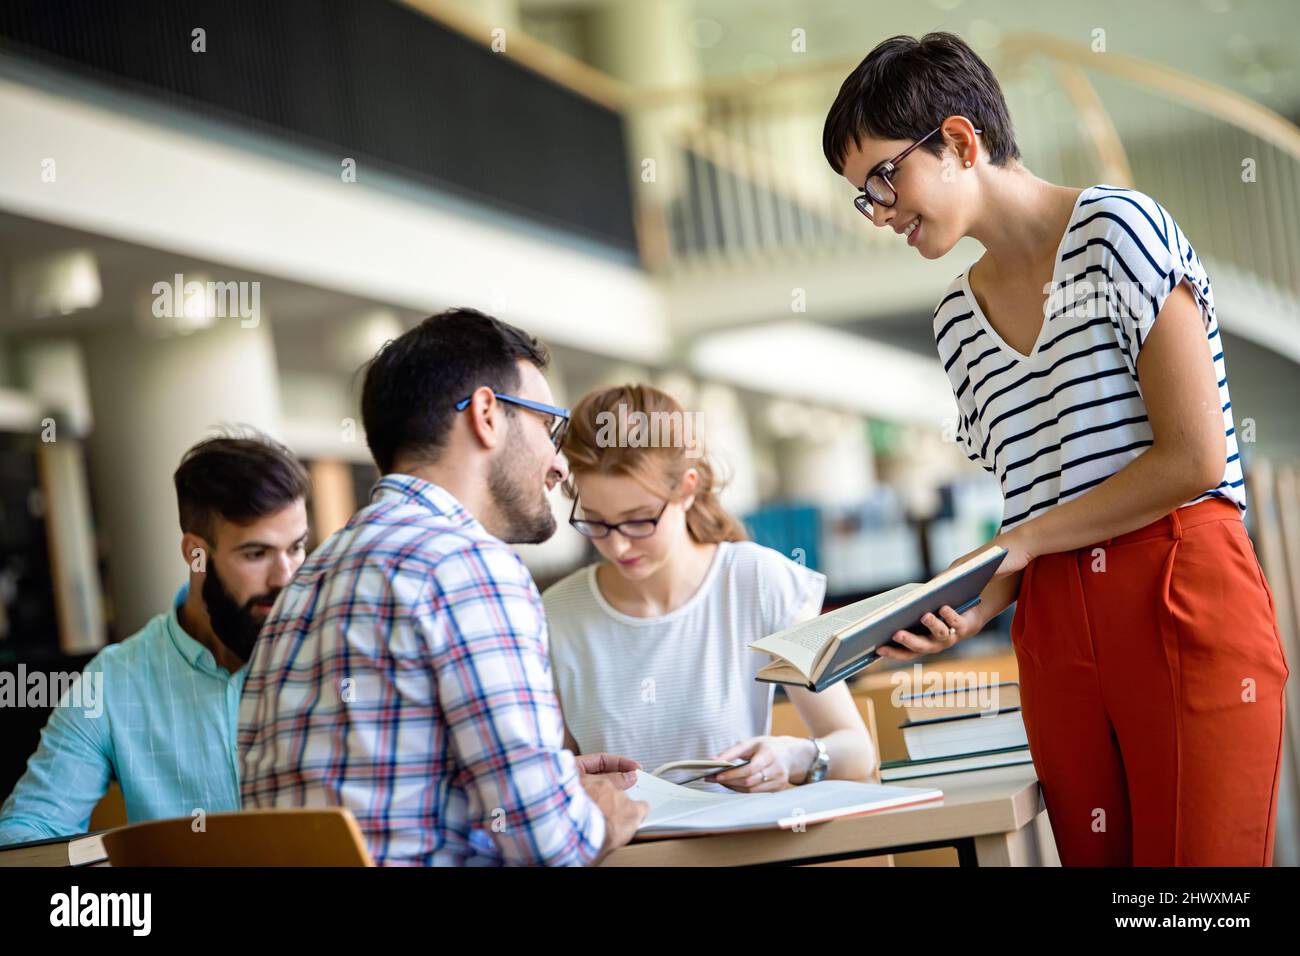 Studenten studieren in der Bibliothek. Junge Erfolge Menschen verbringen Zeit miteinander und lernen gemeinsam. Stockfoto